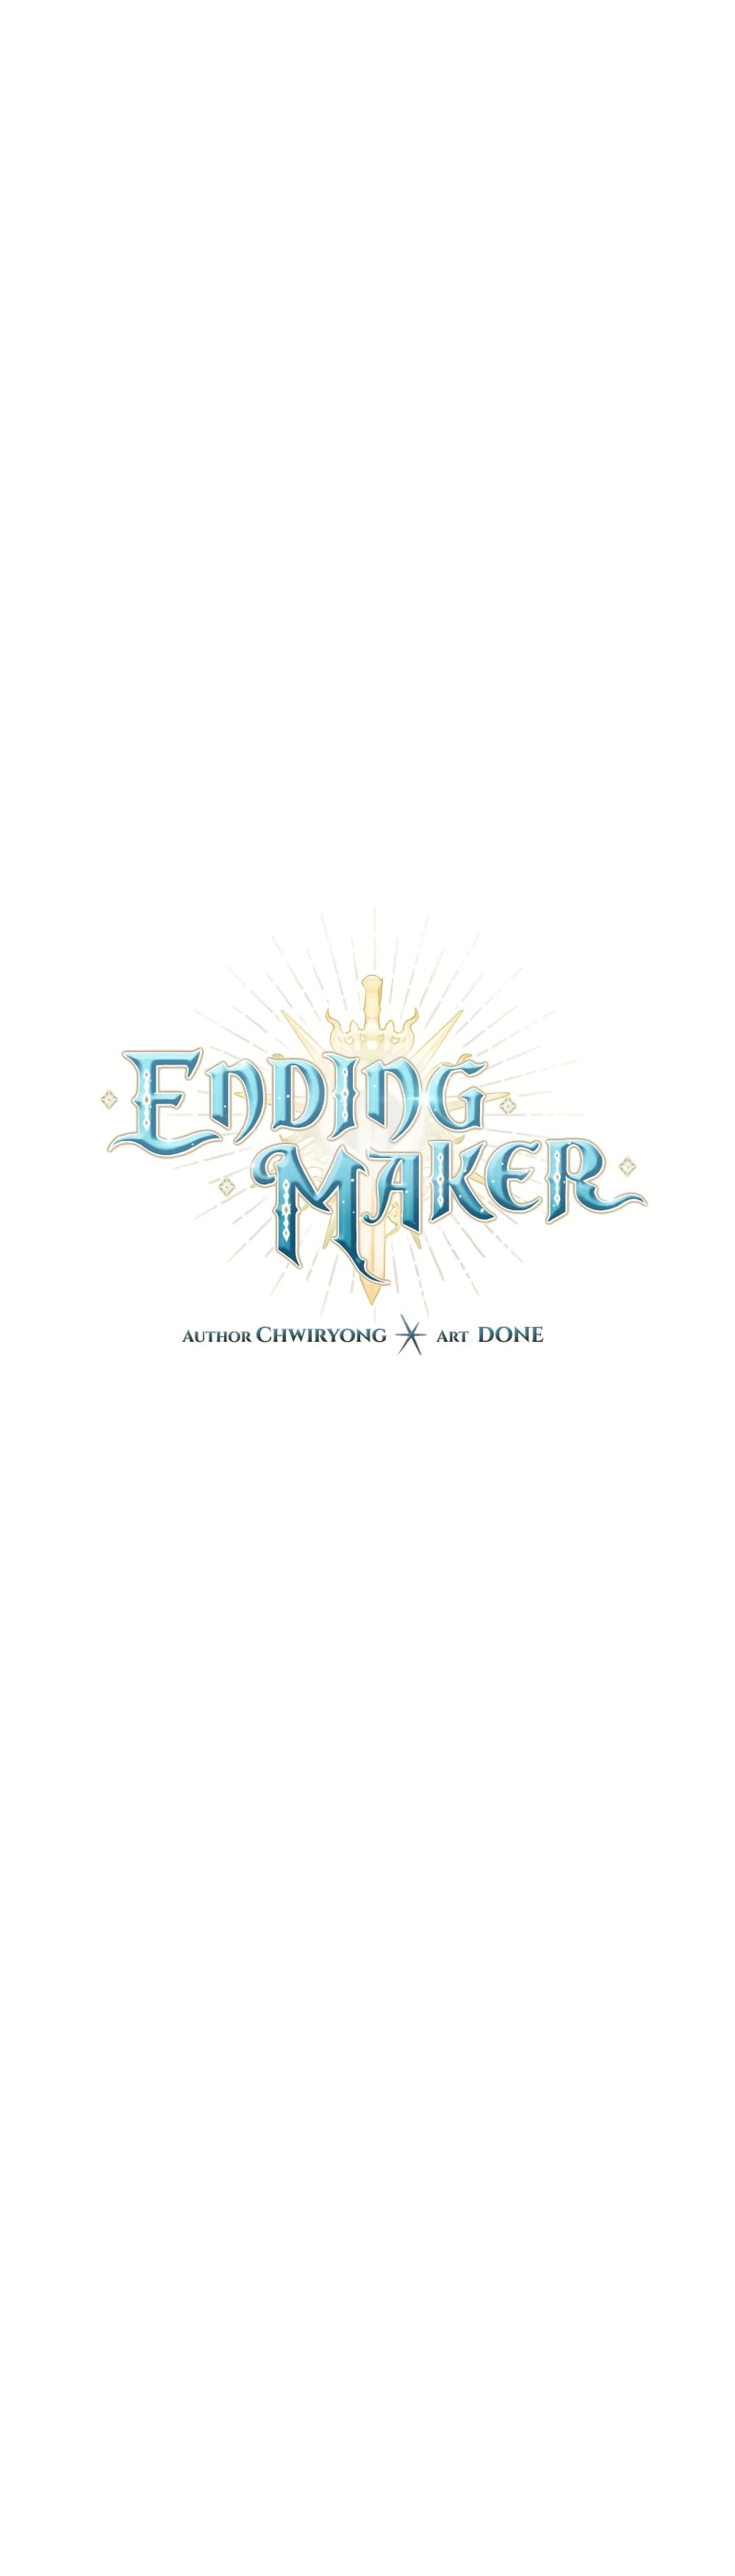 Ending Maker 24 11